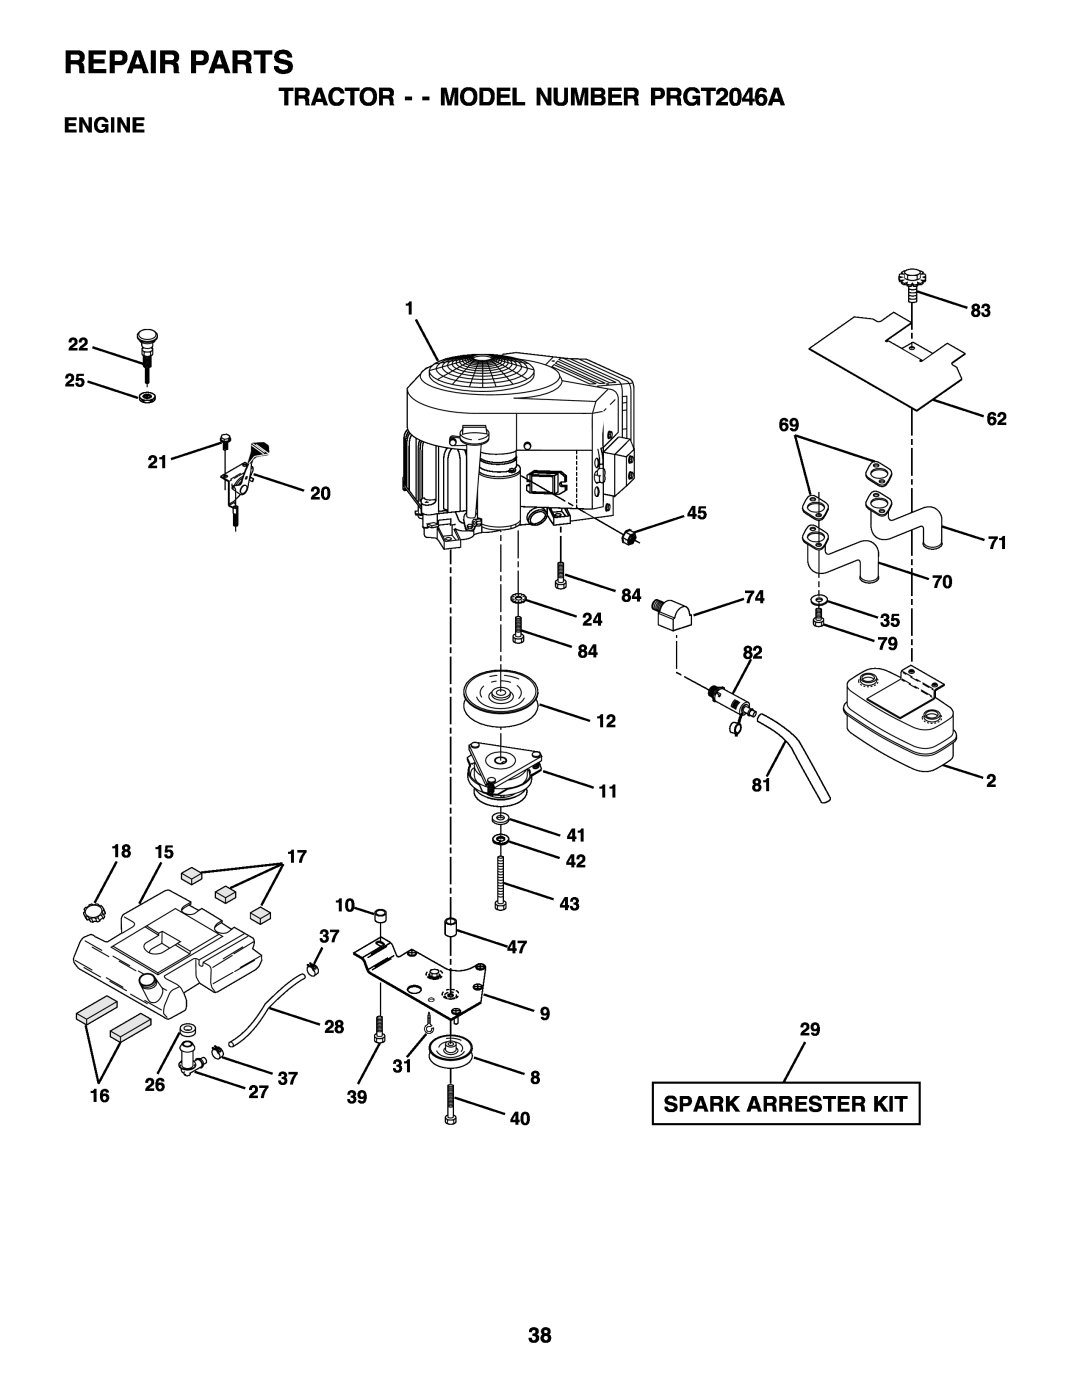 Poulan 177271 owner manual Repair Parts, TRACTOR - - MODEL NUMBER PRGT2046A, Spark Arrester Kit, Engine, 6962 